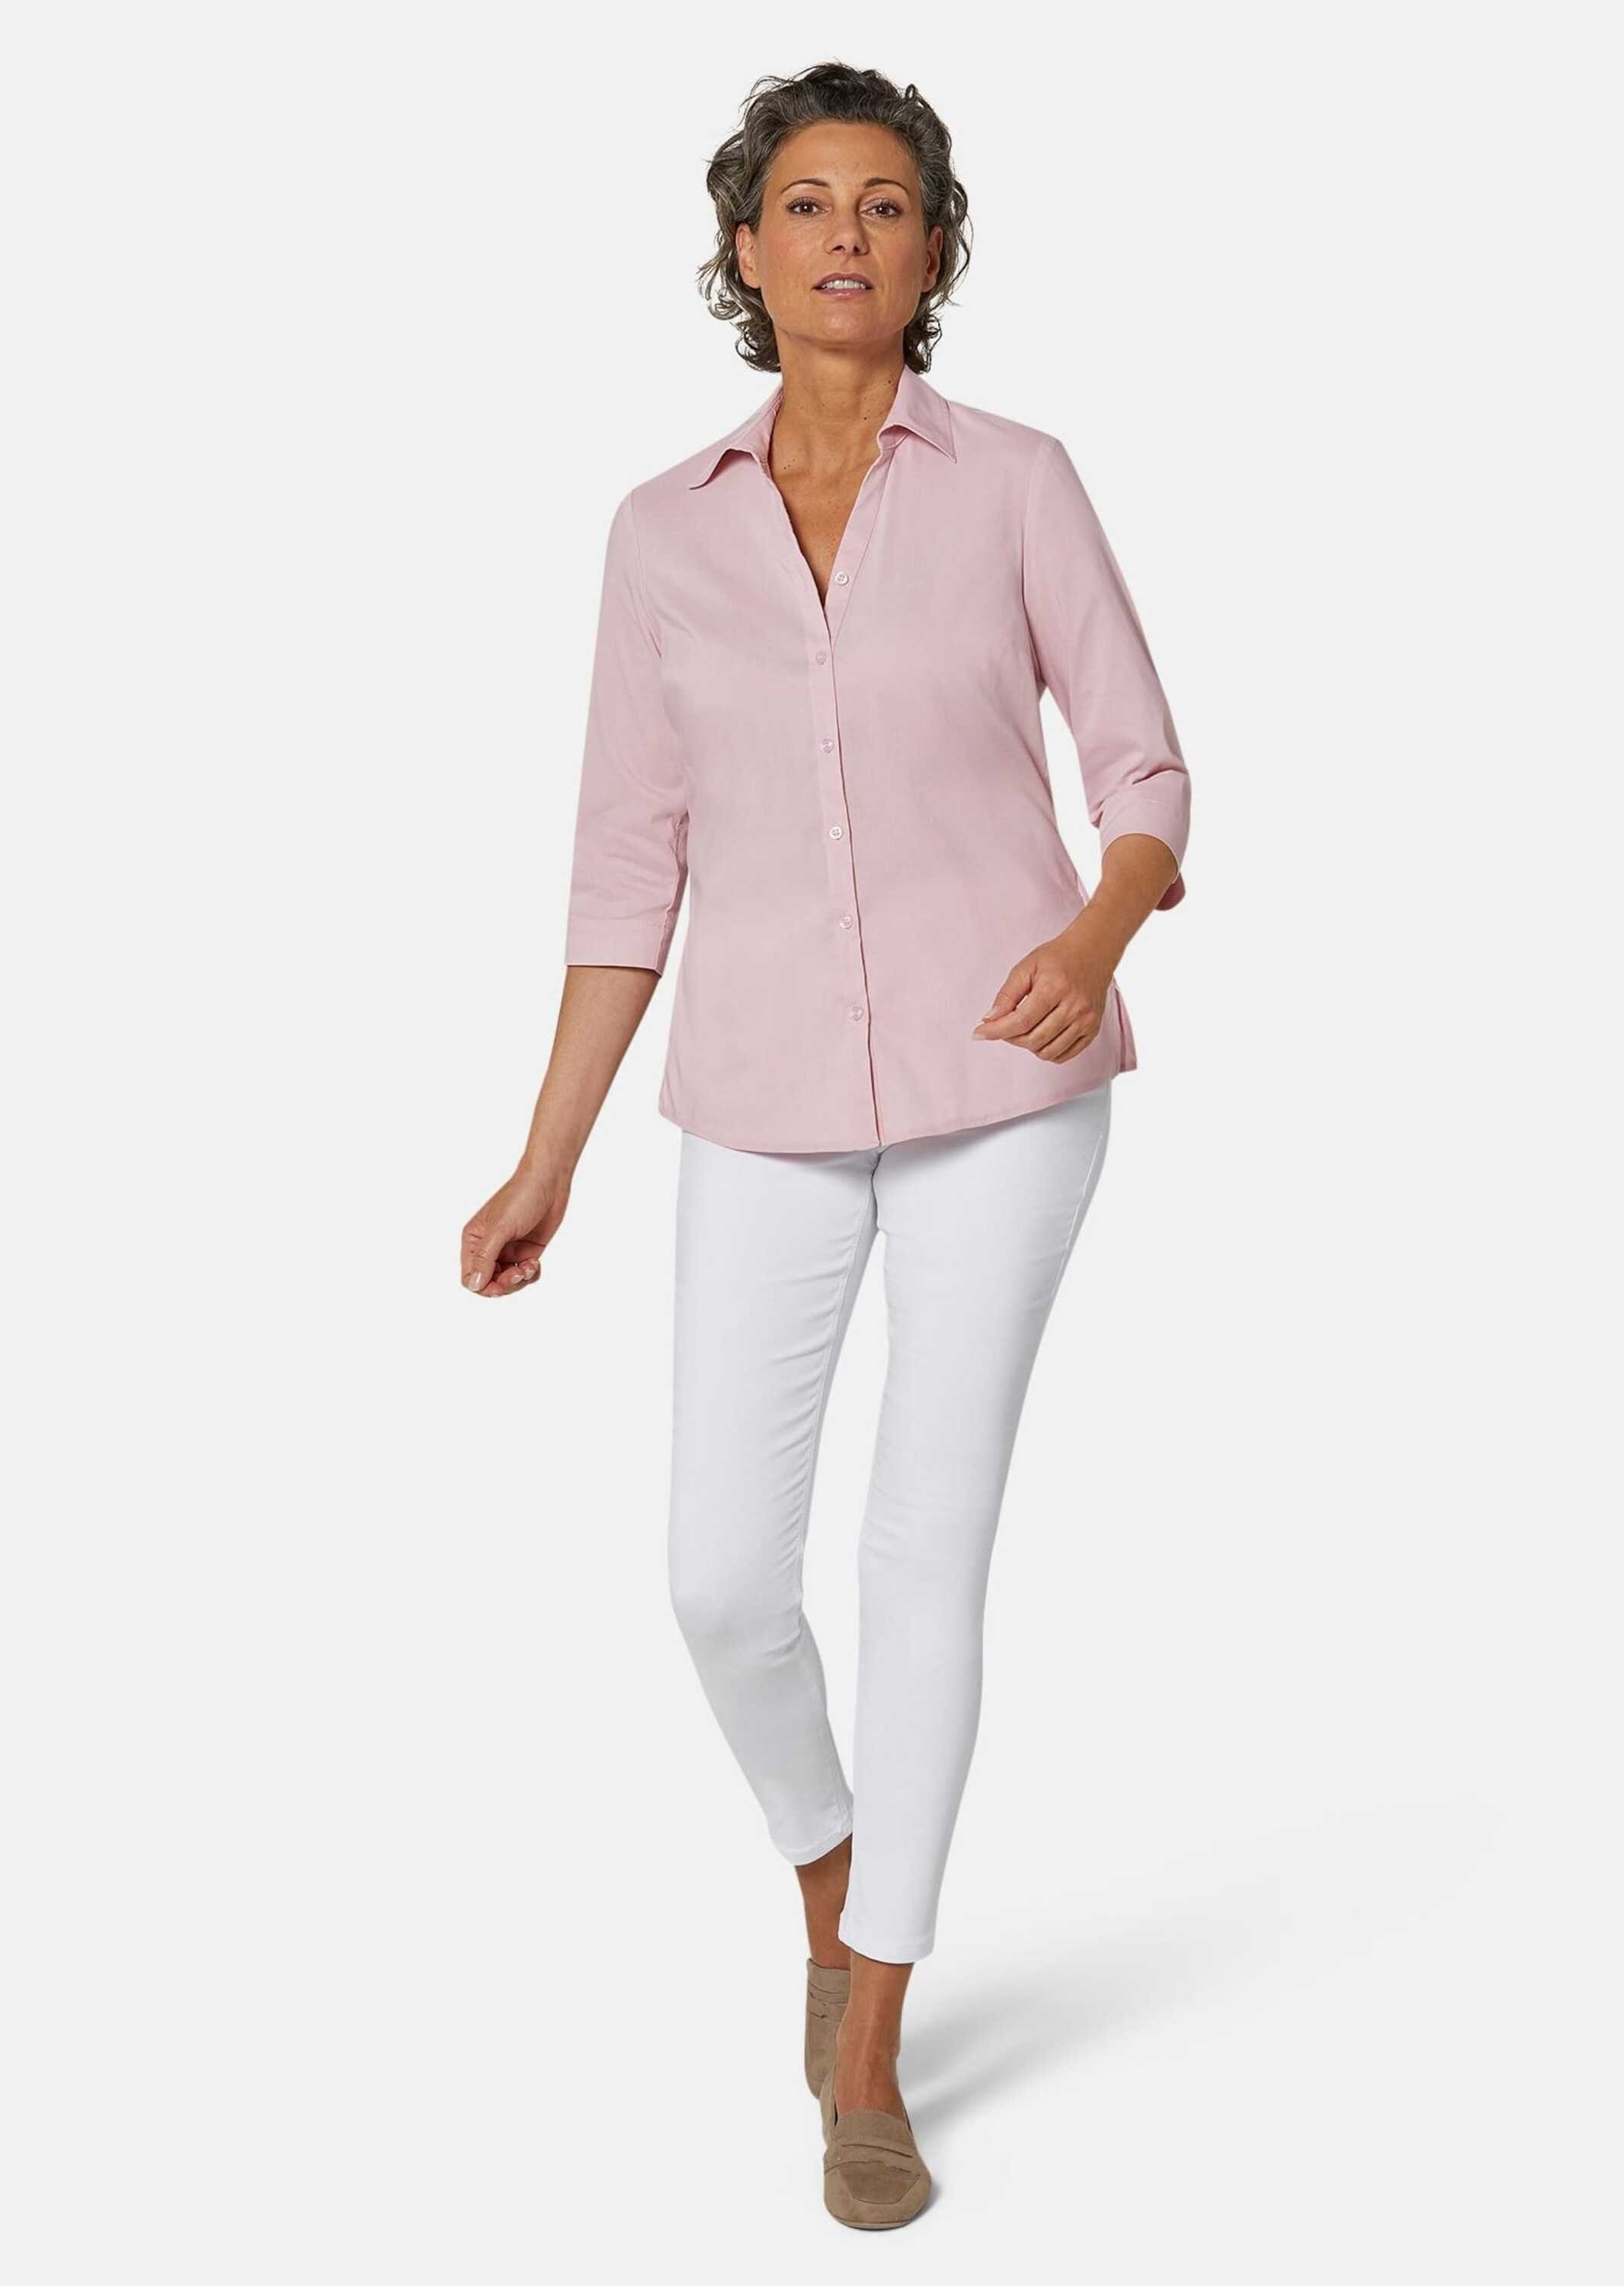 GOLDNER Hemdbluse Kurzgröße: Stretchbequeme Bluse mit Baumwolle rosé